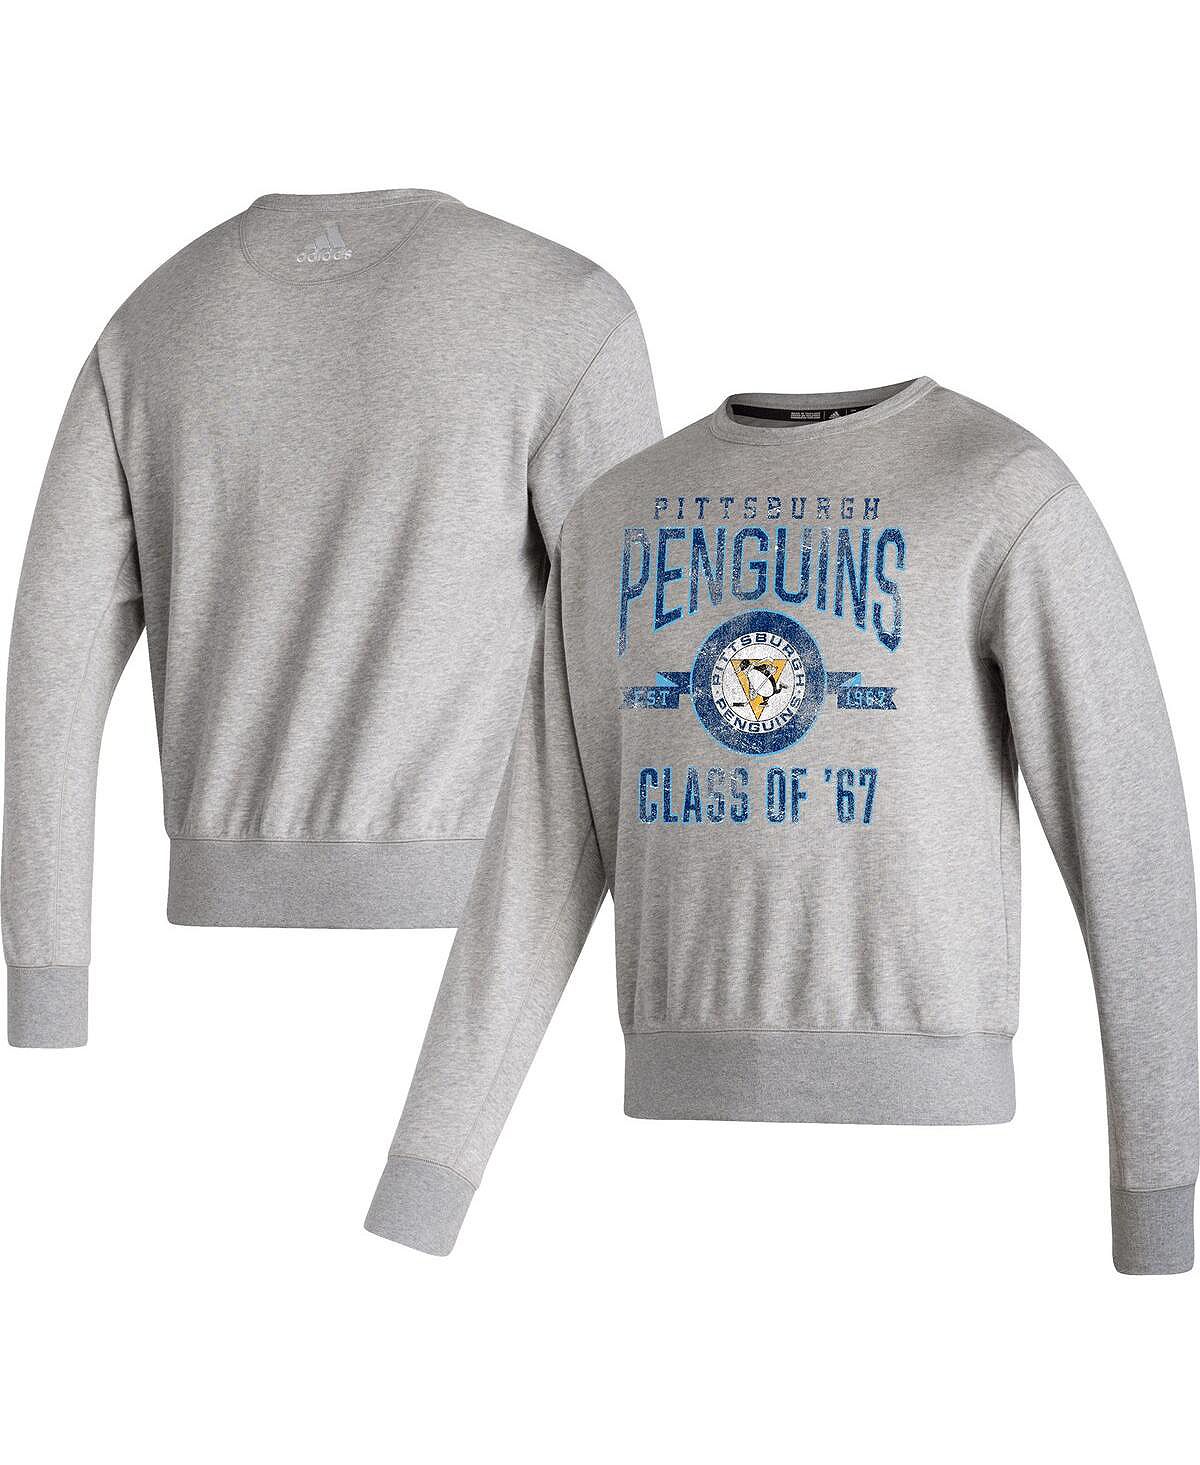 Мужская меланжевая серая футболка pittsburgh penguins в винтажном стиле, пуловер, толстовка adidas, мульти шапка pittsburgh penguins